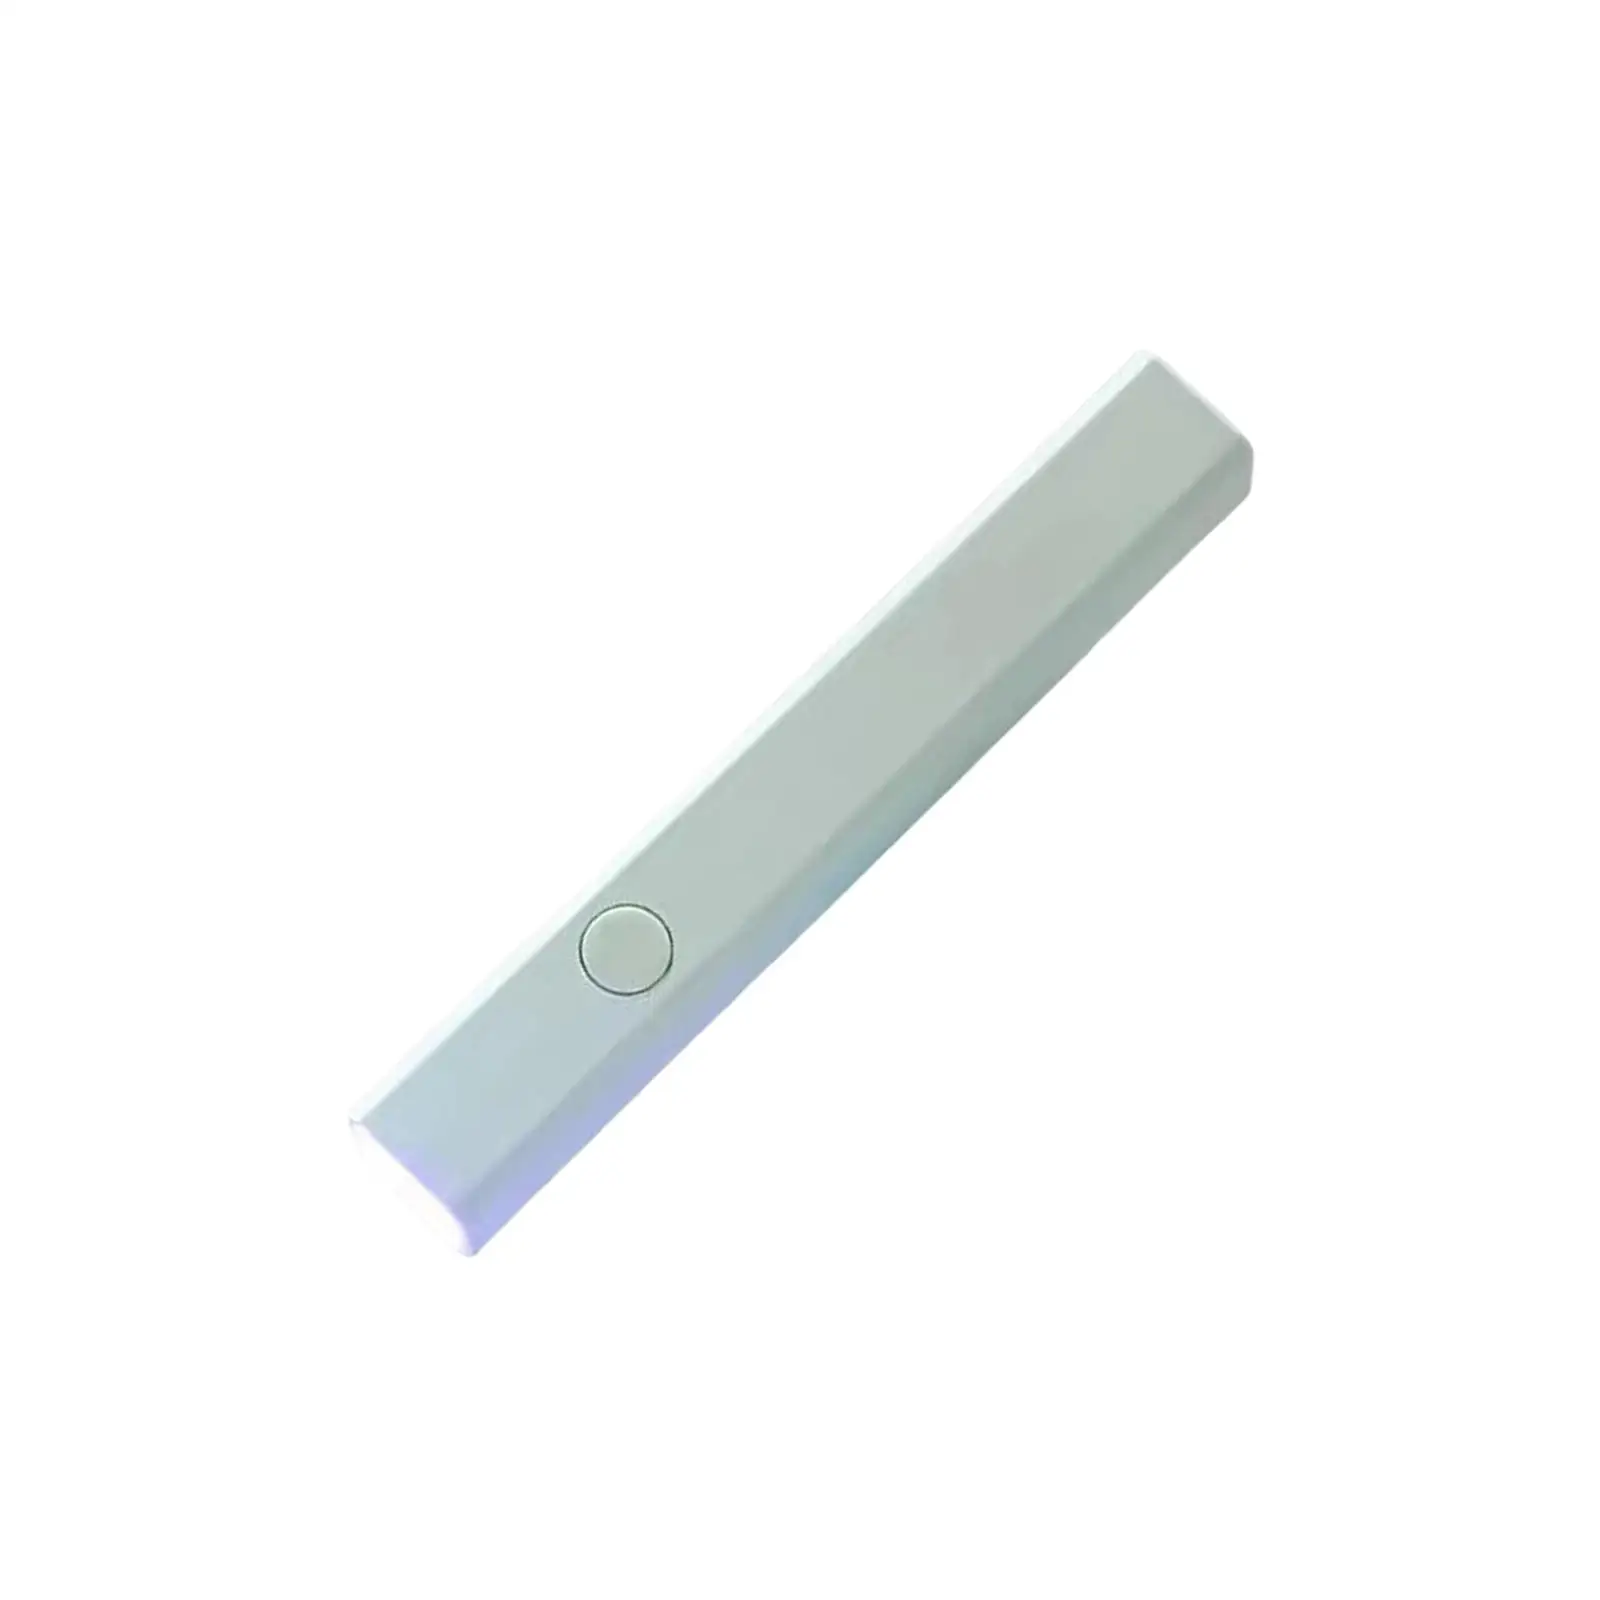 Handheld Nail Lamp Flashlight Fast Curing USB Nail Salon Manicure Tool Small Nail Polish Curing Lamp UV Nail Light Nail Dryer